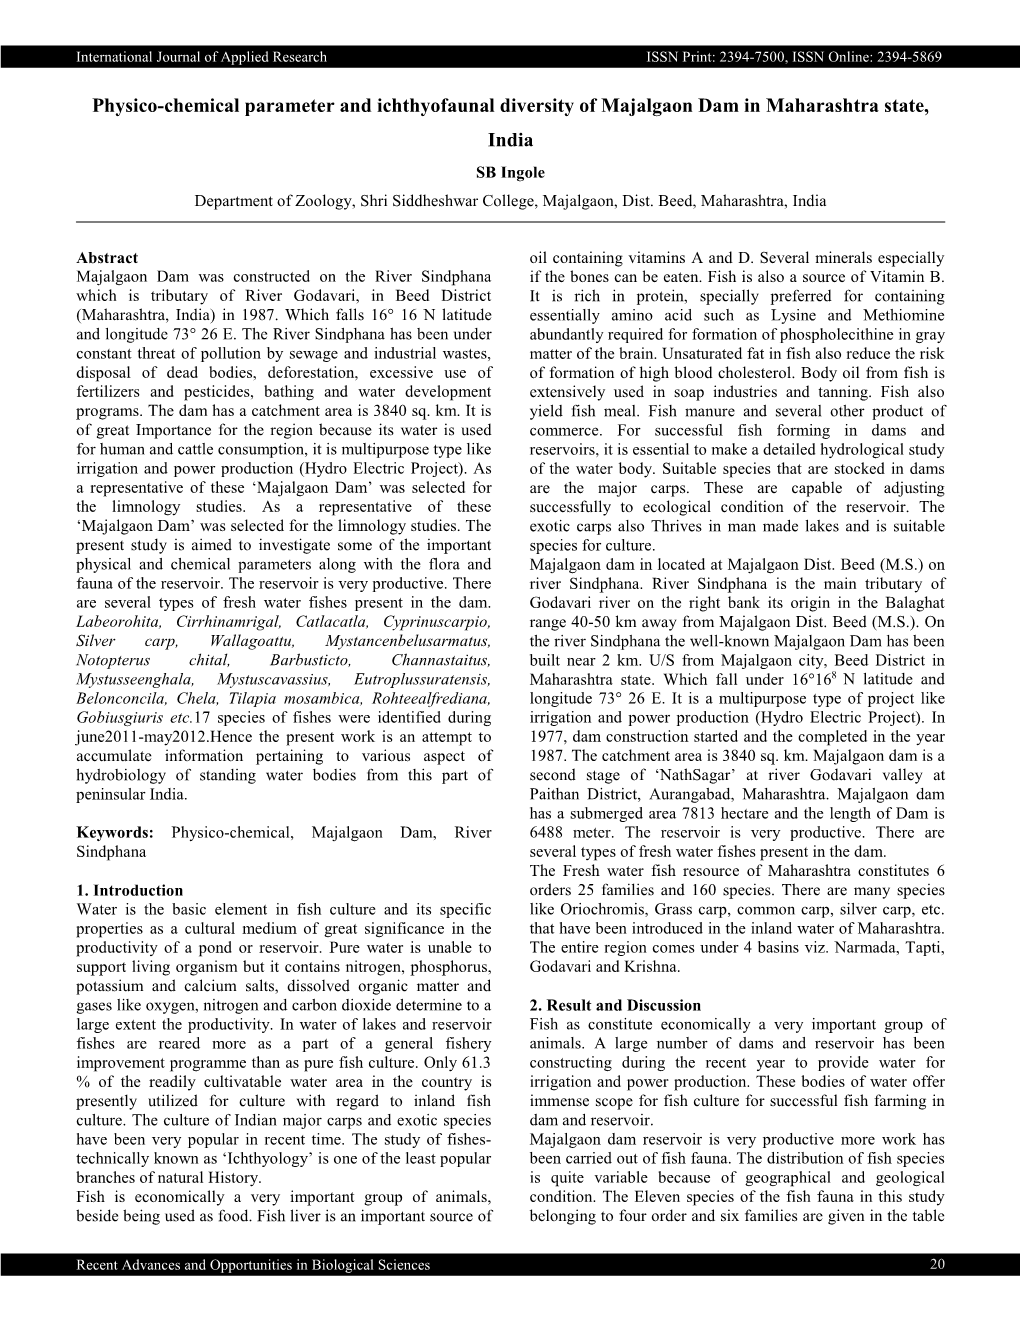 Physico-Chemical Parameter and Ichthyofaunal Diversity of Majalgaon